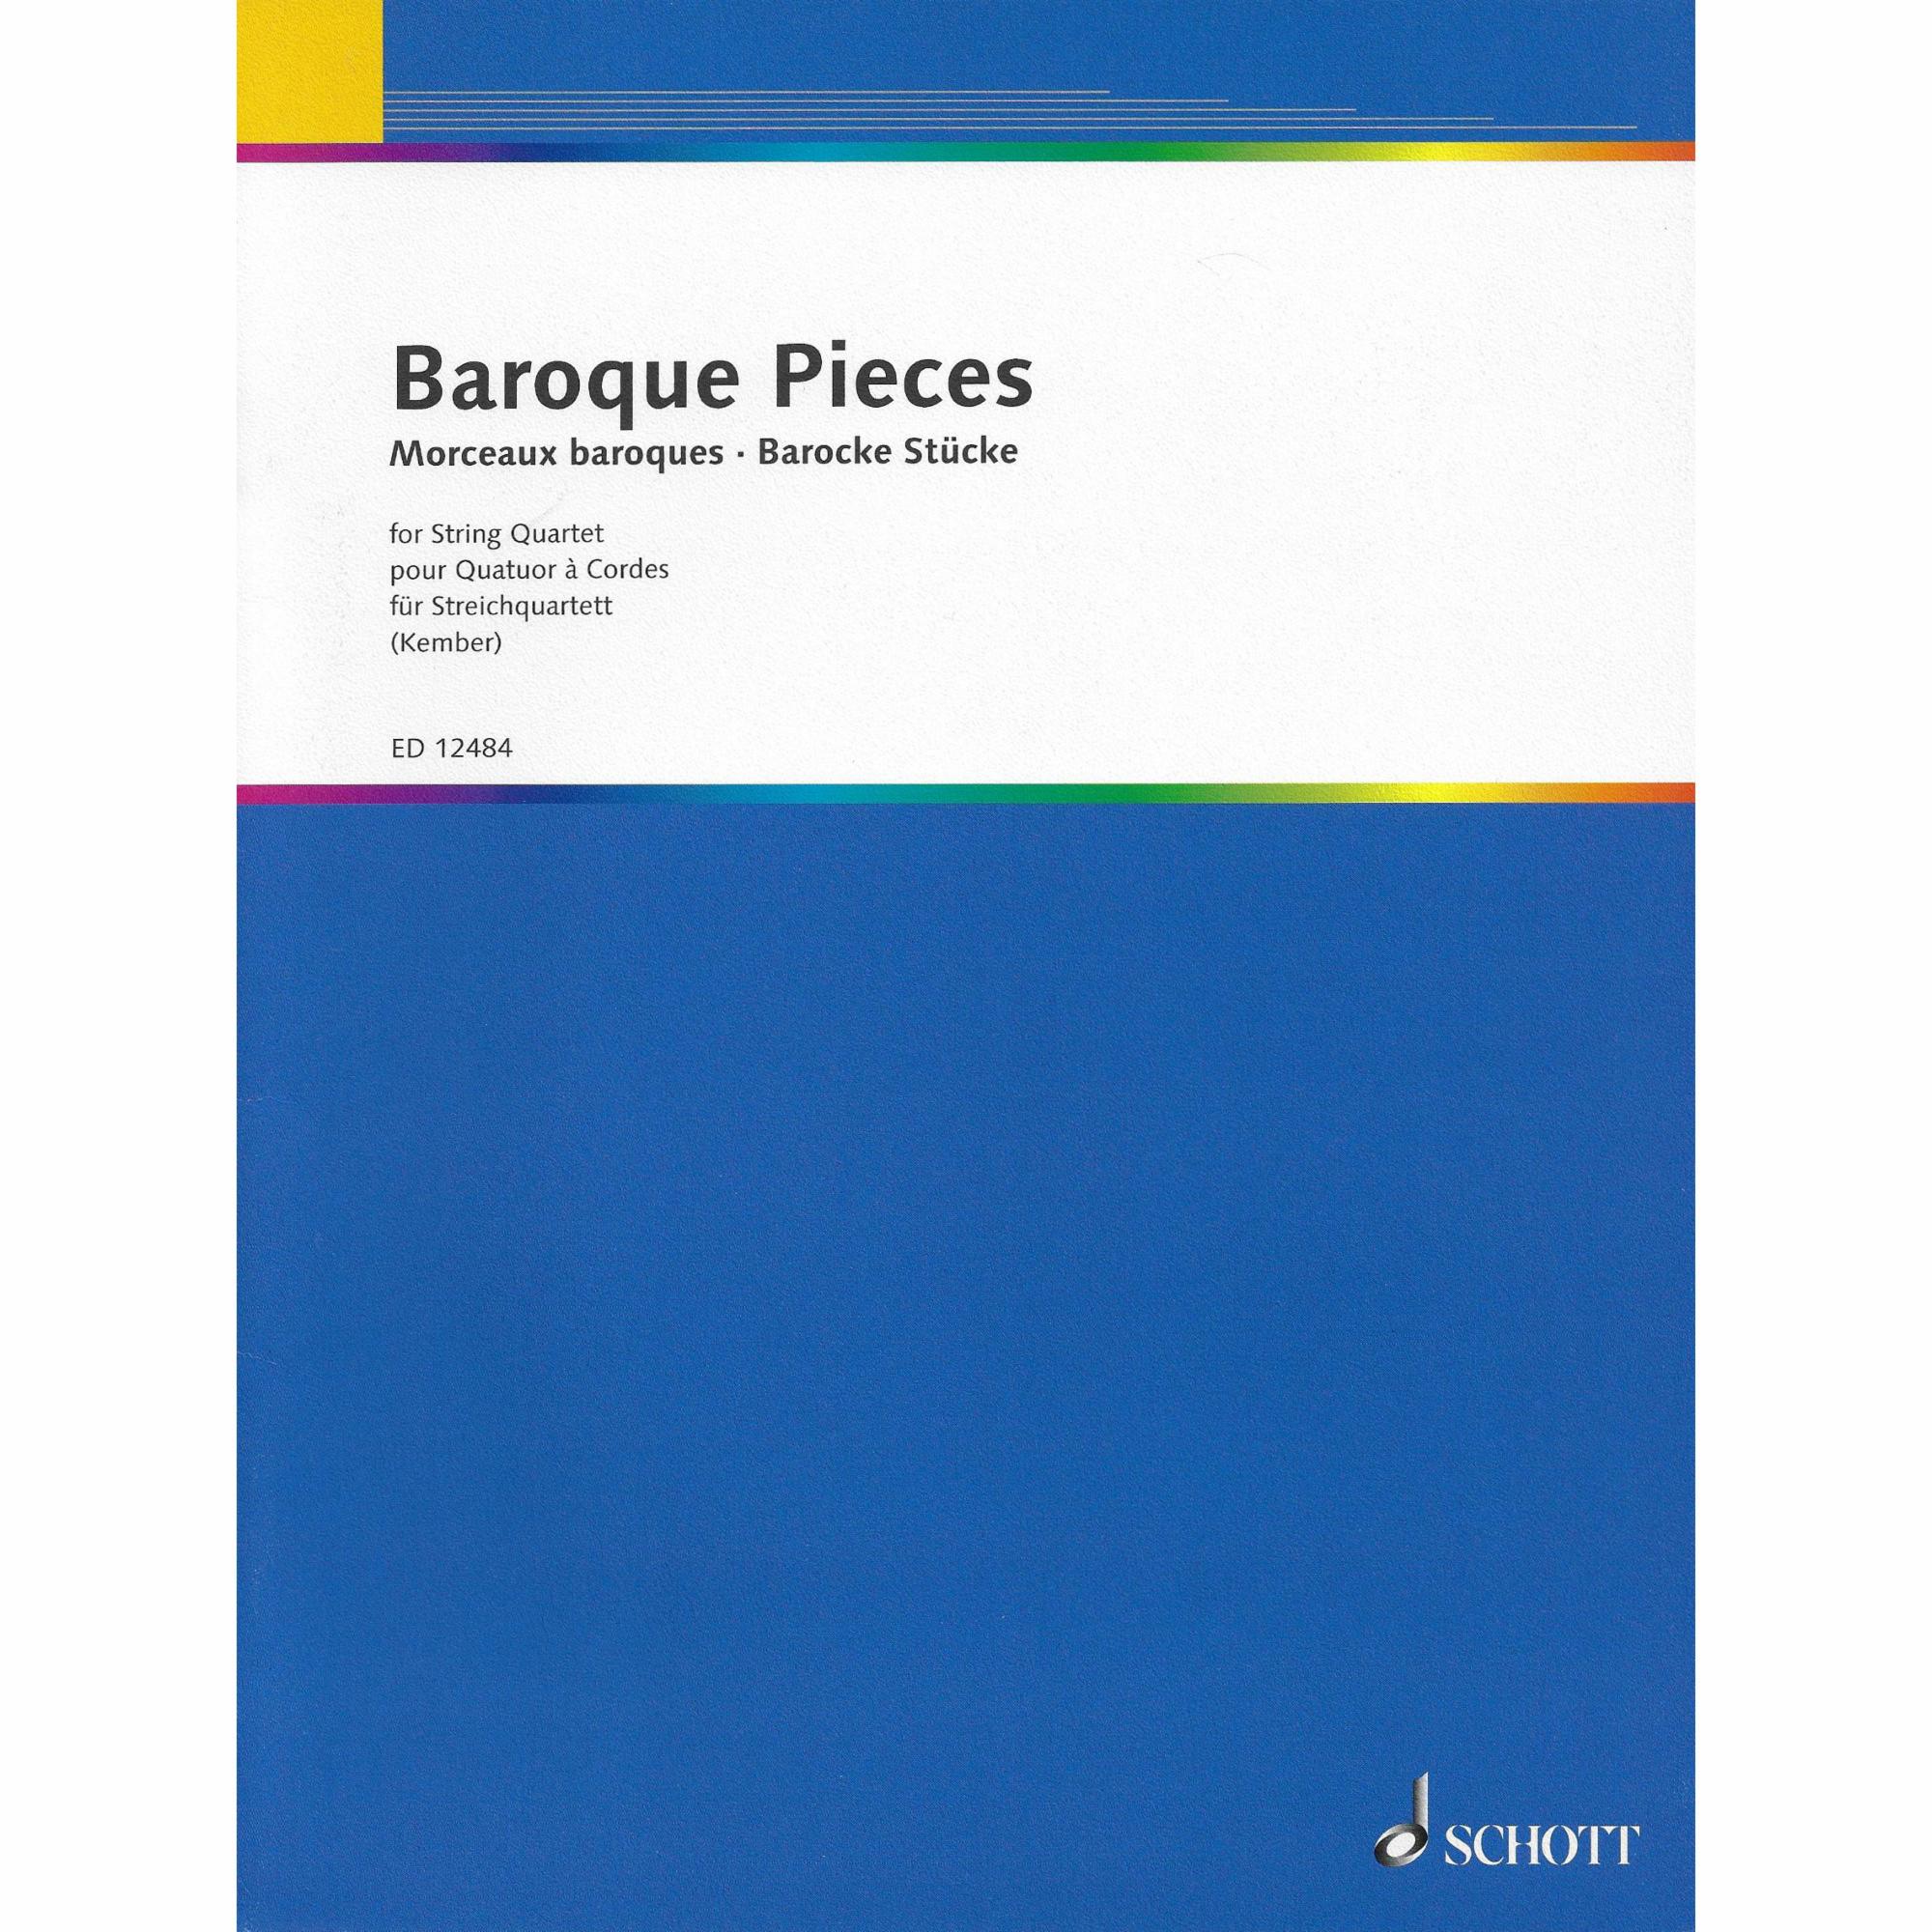 Baroque Pieces for String Quartet